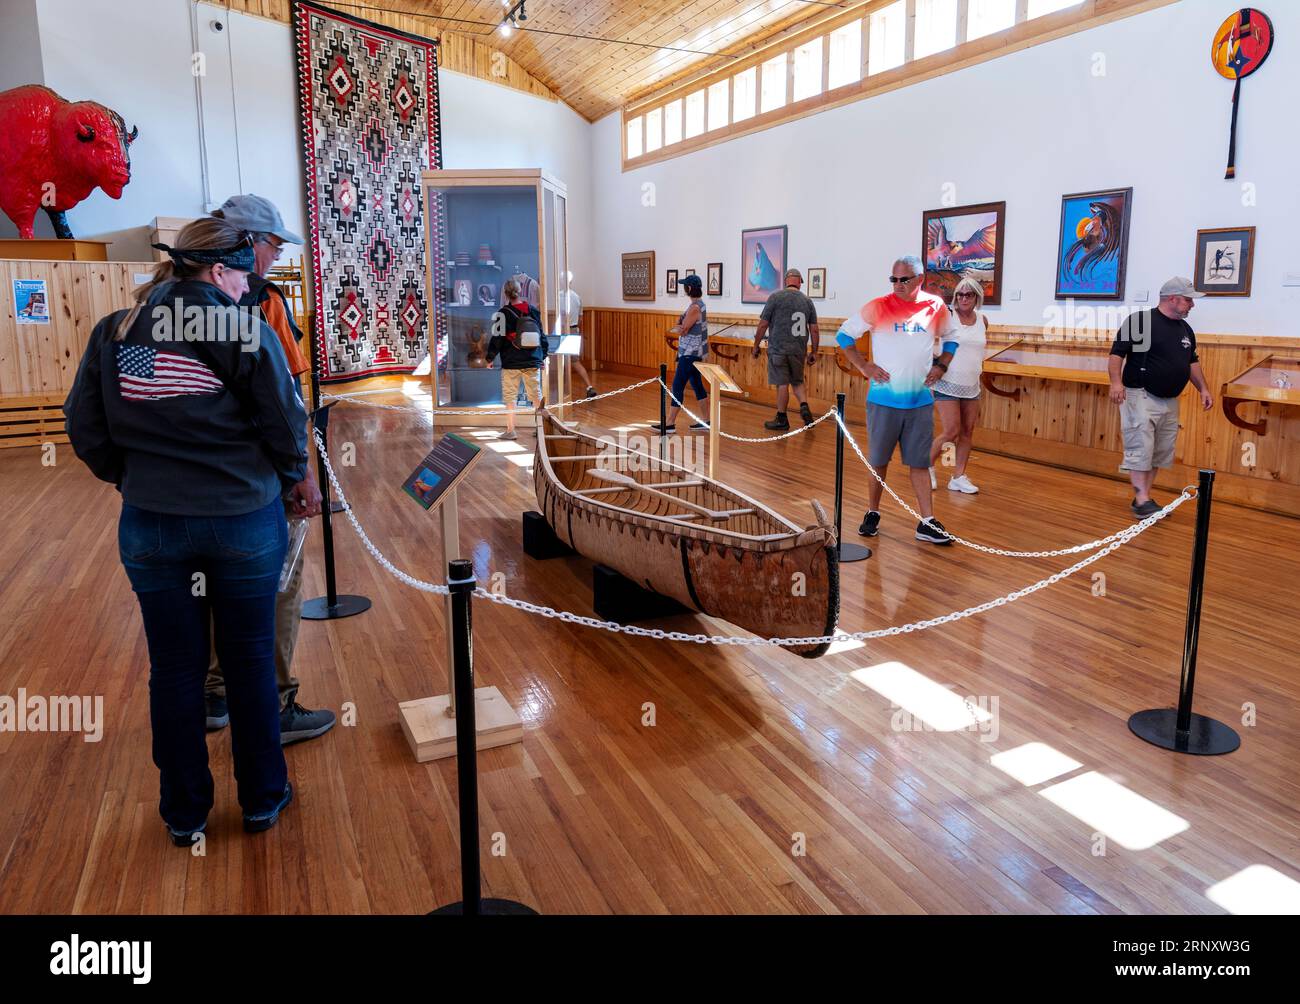 Les touristes visitent Crazy Horse Memorial ; expositions de musée intérieur ; Custer City ; Dakota du Sud ; États-Unis Banque D'Images